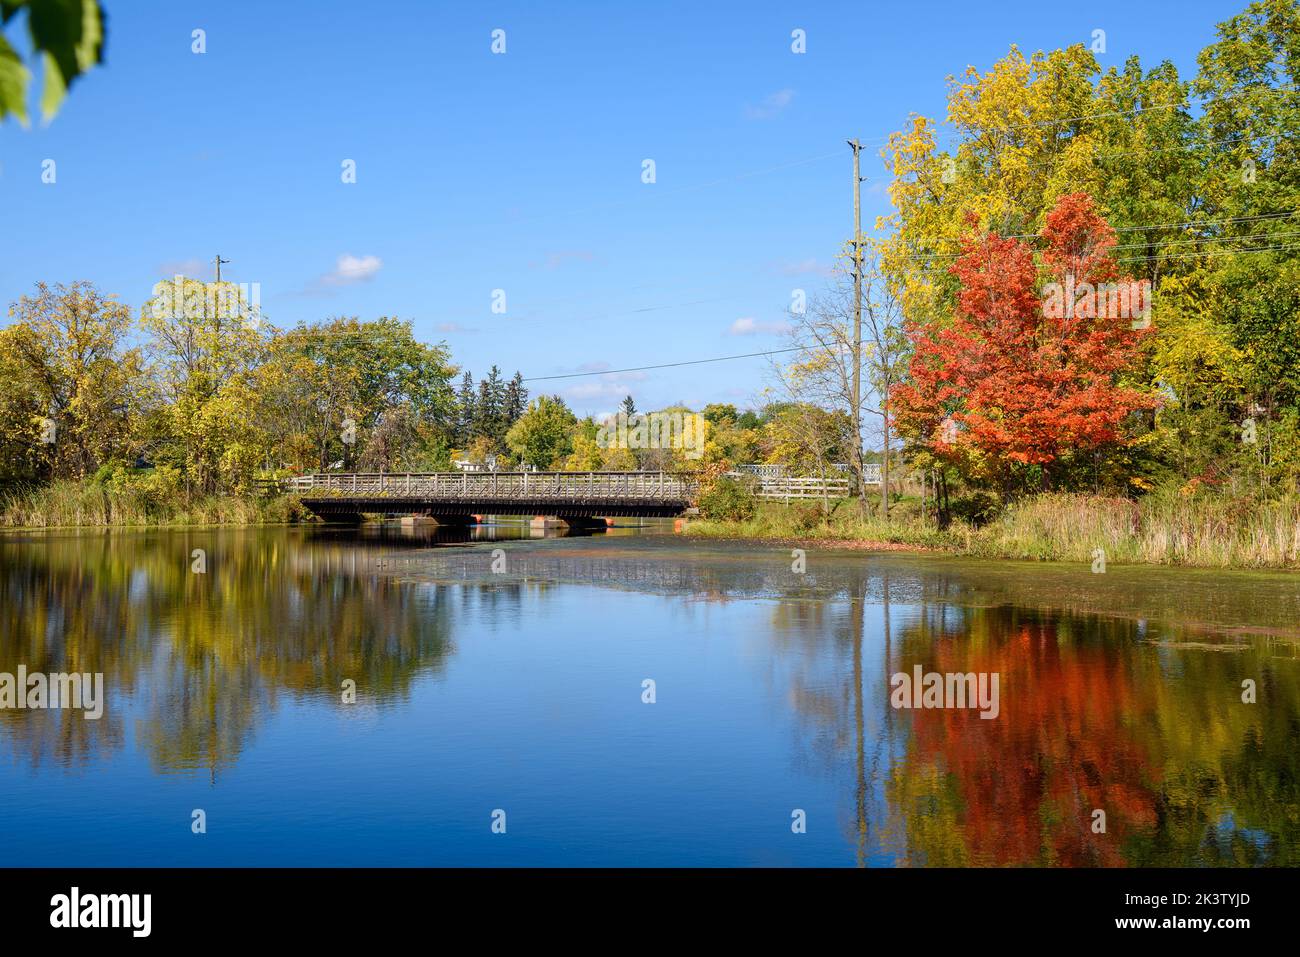 Hölzerne Fußgängerbrücke über einen Fluss, der an einem sonnigen Herbsttag mit Bäumen gesäumt ist, auf der Spitze des Herbstlaubes Stockfoto